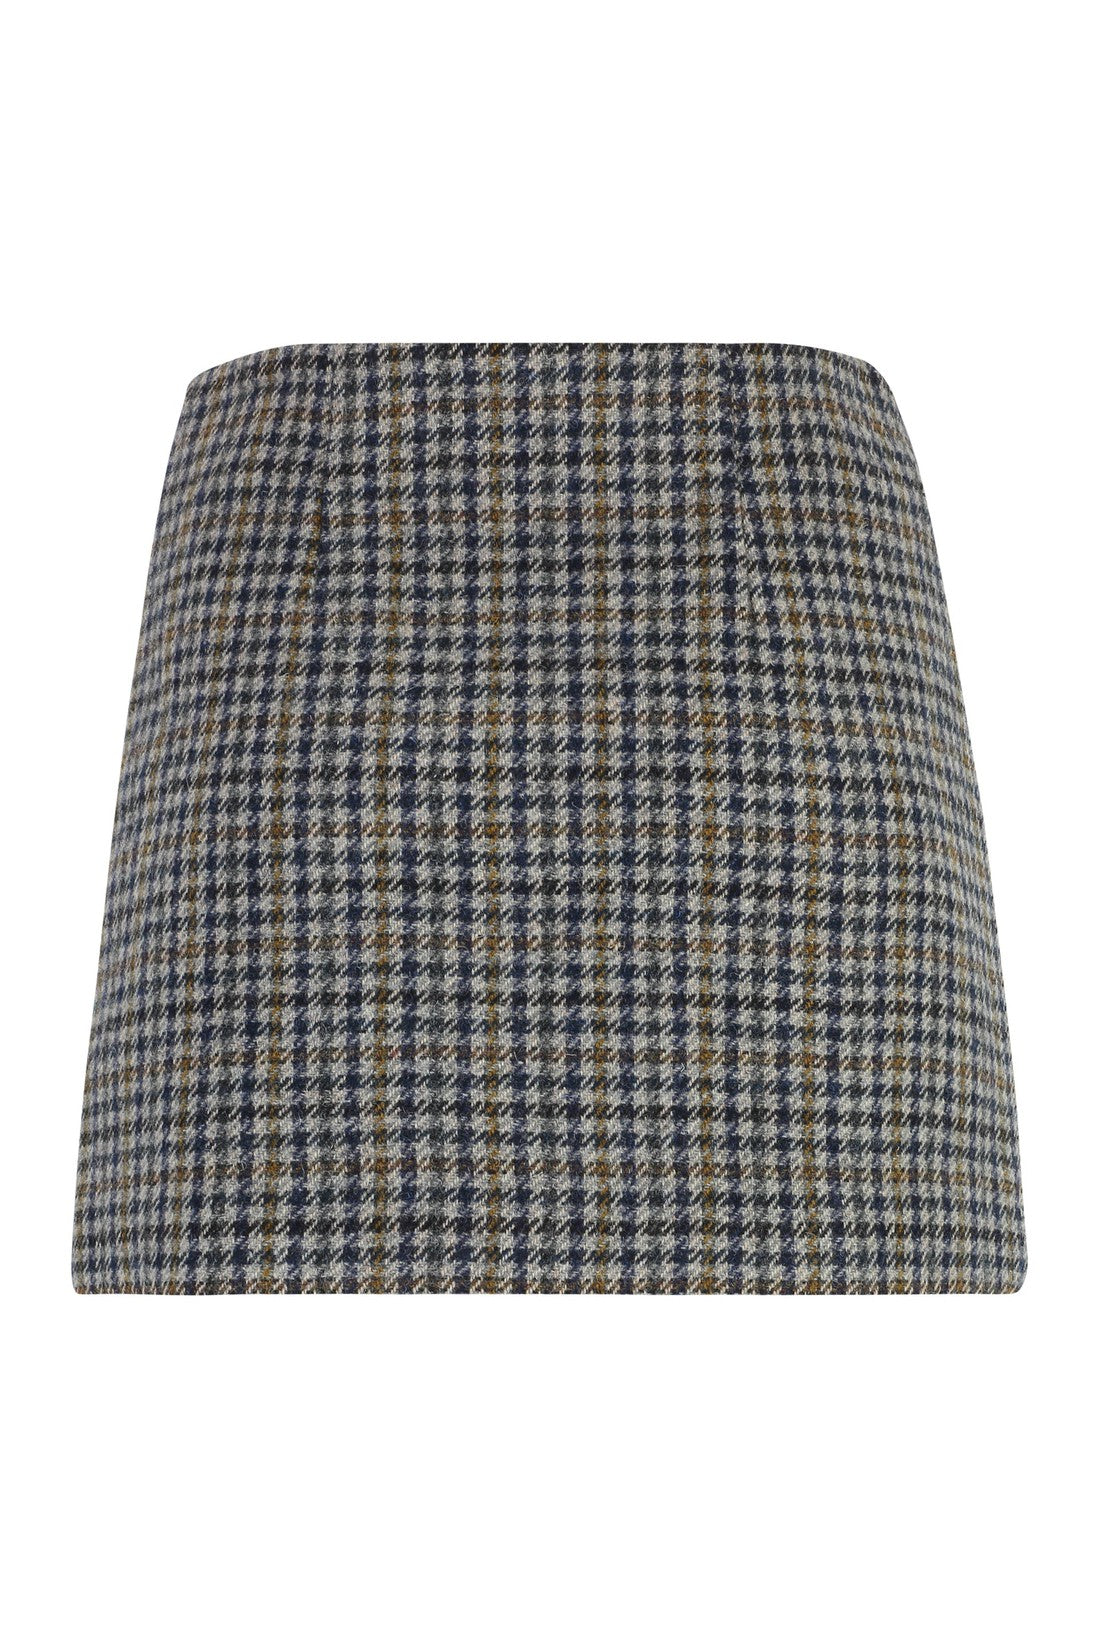 Parosh-OUTLET-SALE-Wool mini skirt-ARCHIVIST